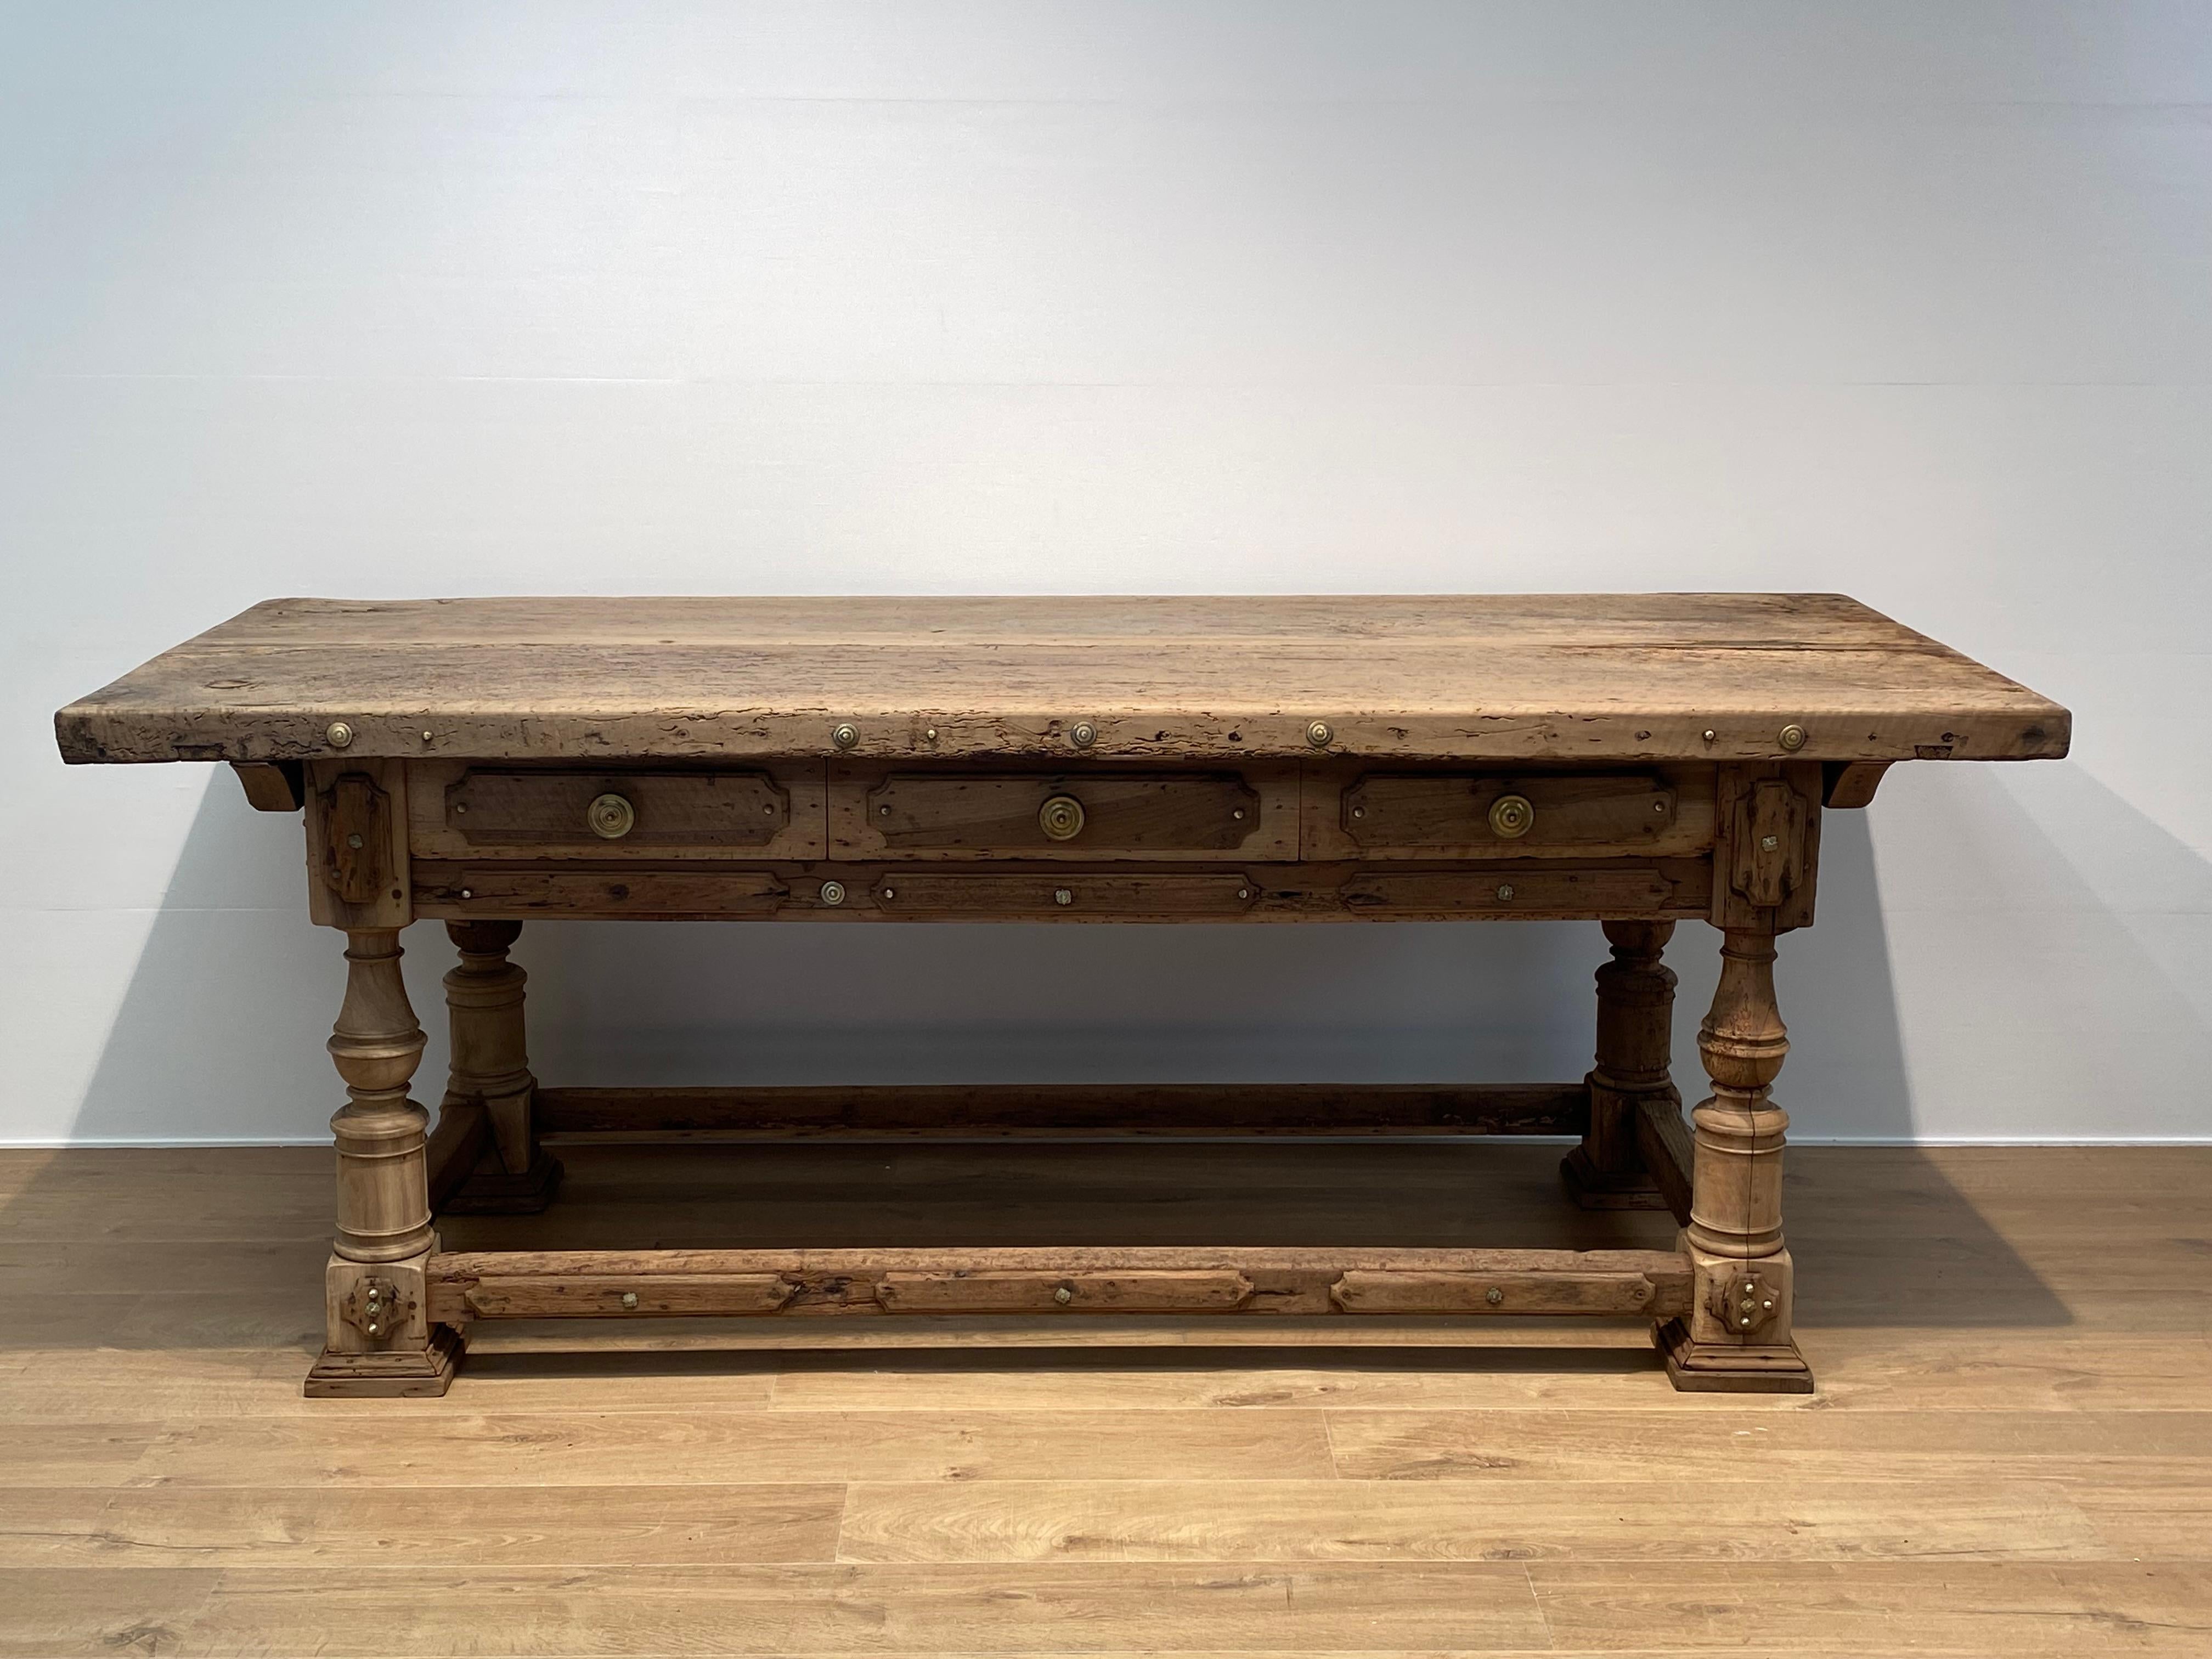 Außergewöhnlicher und brutalistischer antiker Tisch aus Italien aus Bologna,
aus dem 17. Jahrhundert, gebleicht, aus Eichen-, Nussbaum- und Pappelholz gefertigt,
der Tisch ist reich verziert und hat seine originalen Metalldekorationen und Griffe,